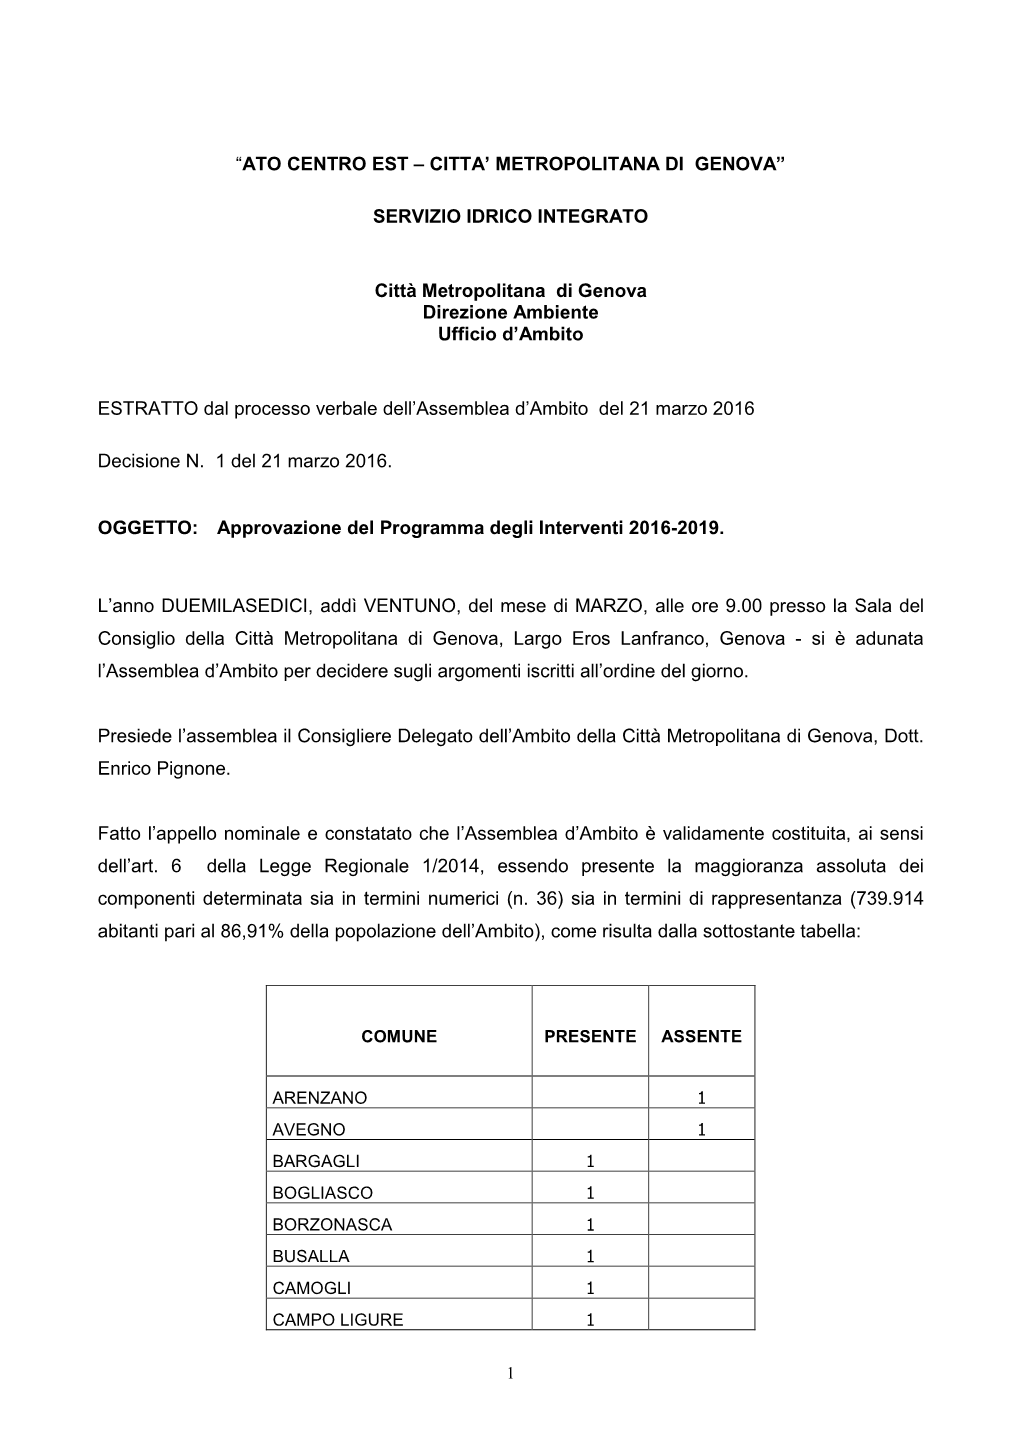 Dec. N. 1 Approvazione Programma Degli Interventi 2016-2019.Doc